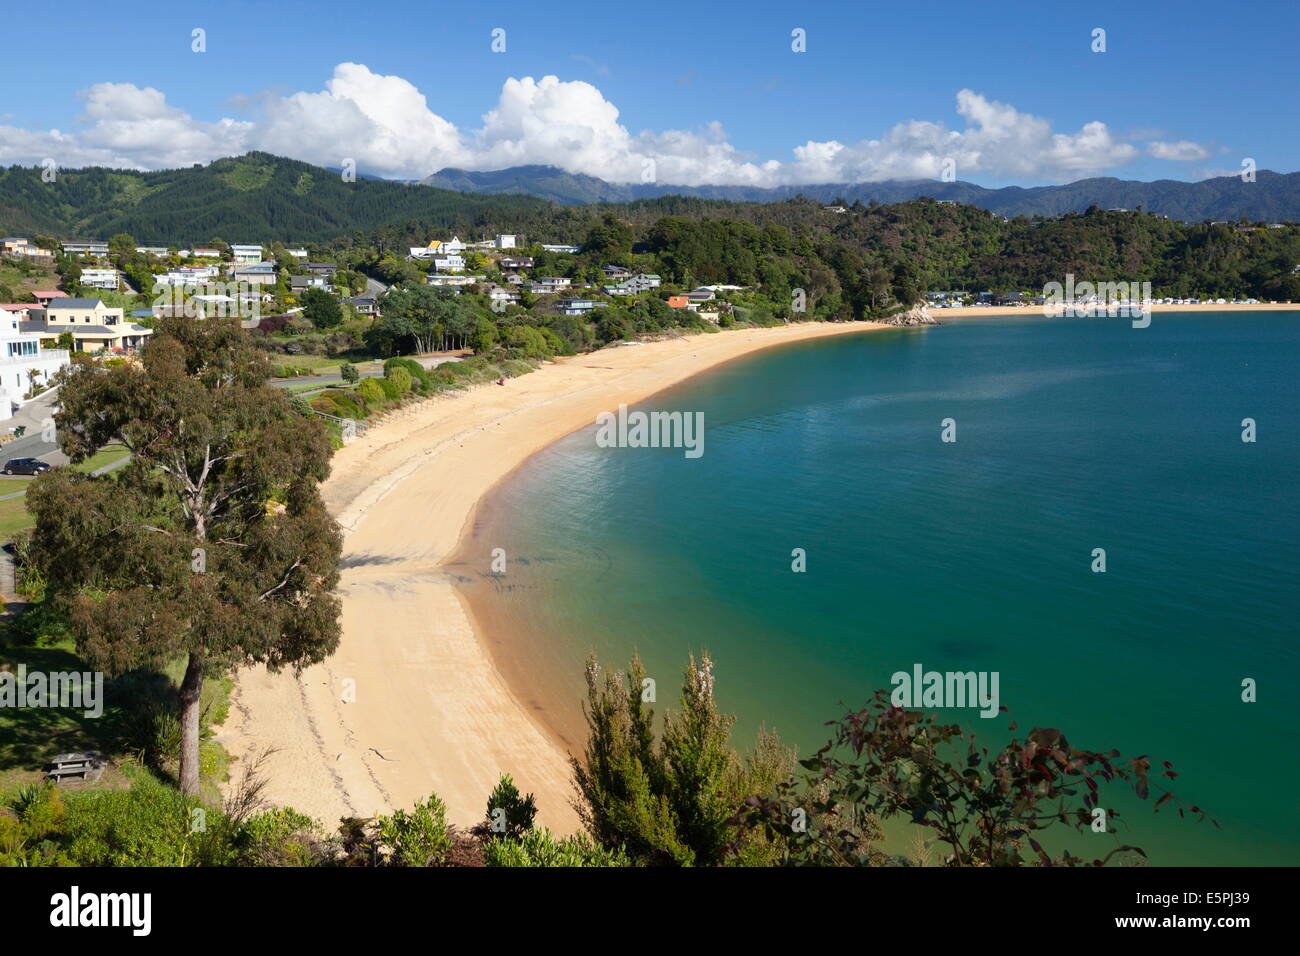 Little Kaiteriteri beach, Little Kaiteriteri, Nelson region, South Island, New Zealand, Pacific Stock Photo